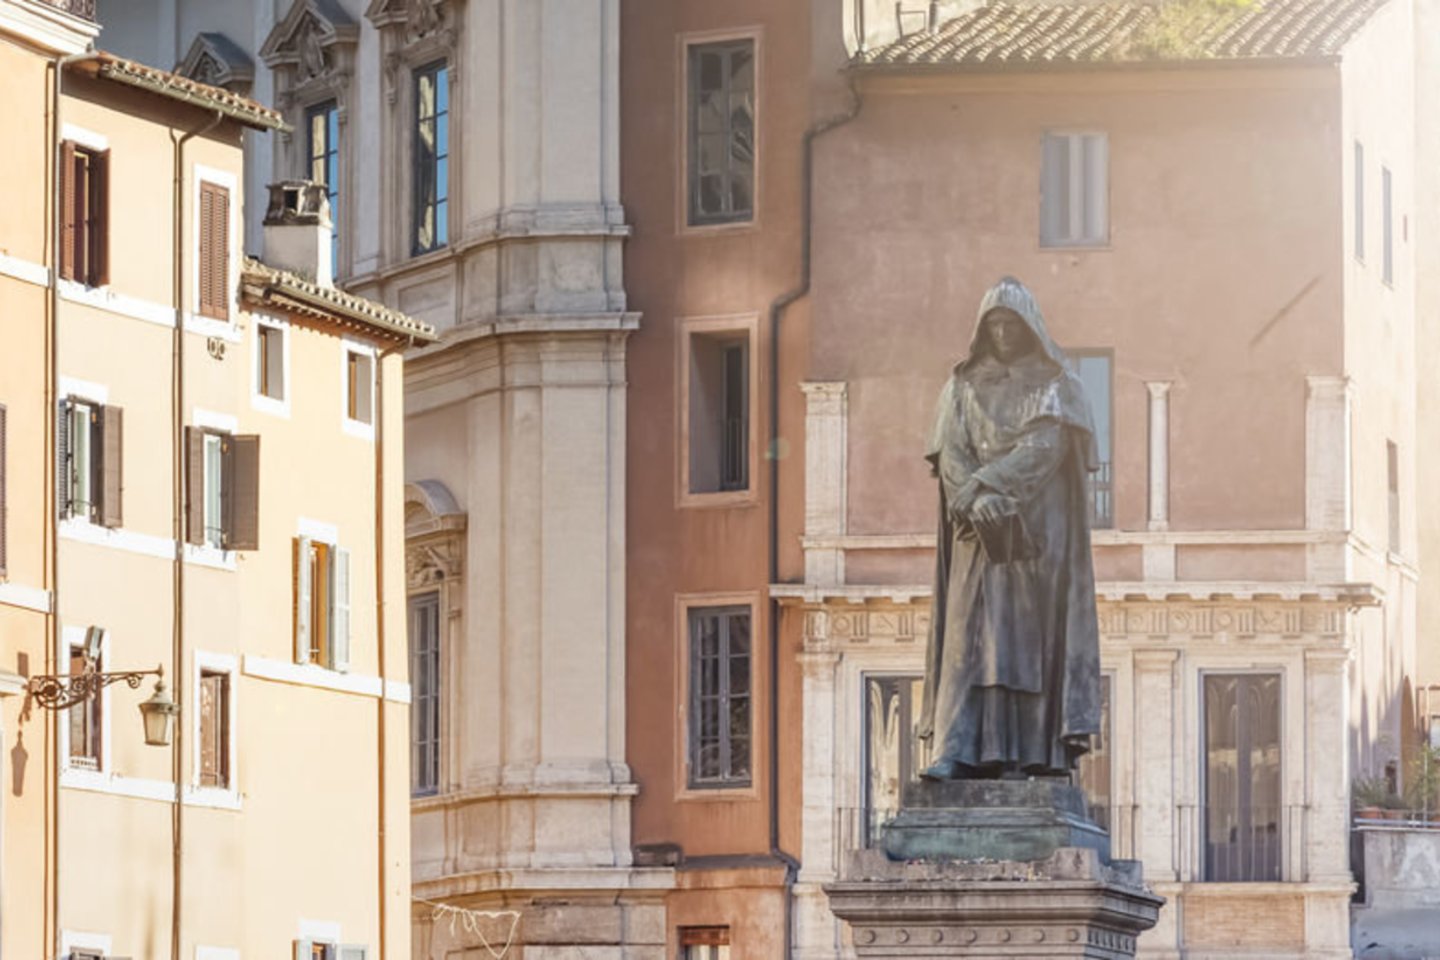 1600 m. Romoje sudegintas vienas žymiausių Renesanso filosofų Giordano Bruno (apie 52 m.).<br>123rf